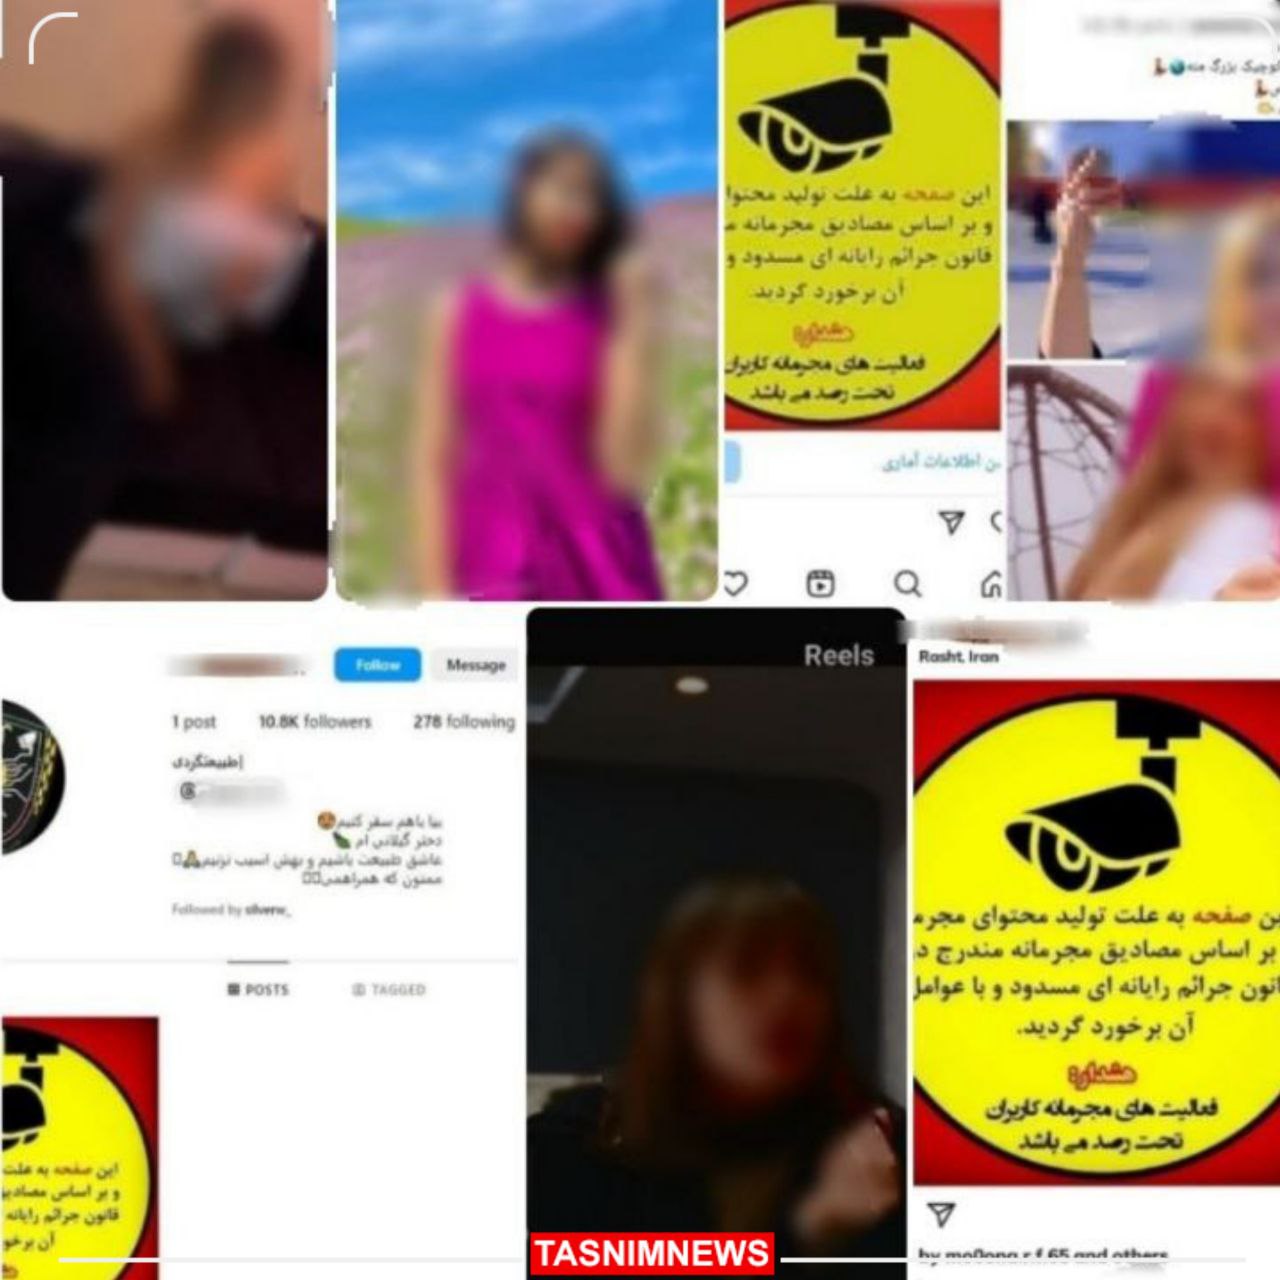 سازمان اطلاعات انتظامی استان گیلان تعدادی از صفحات اینستاگرامی را مسدود کرد